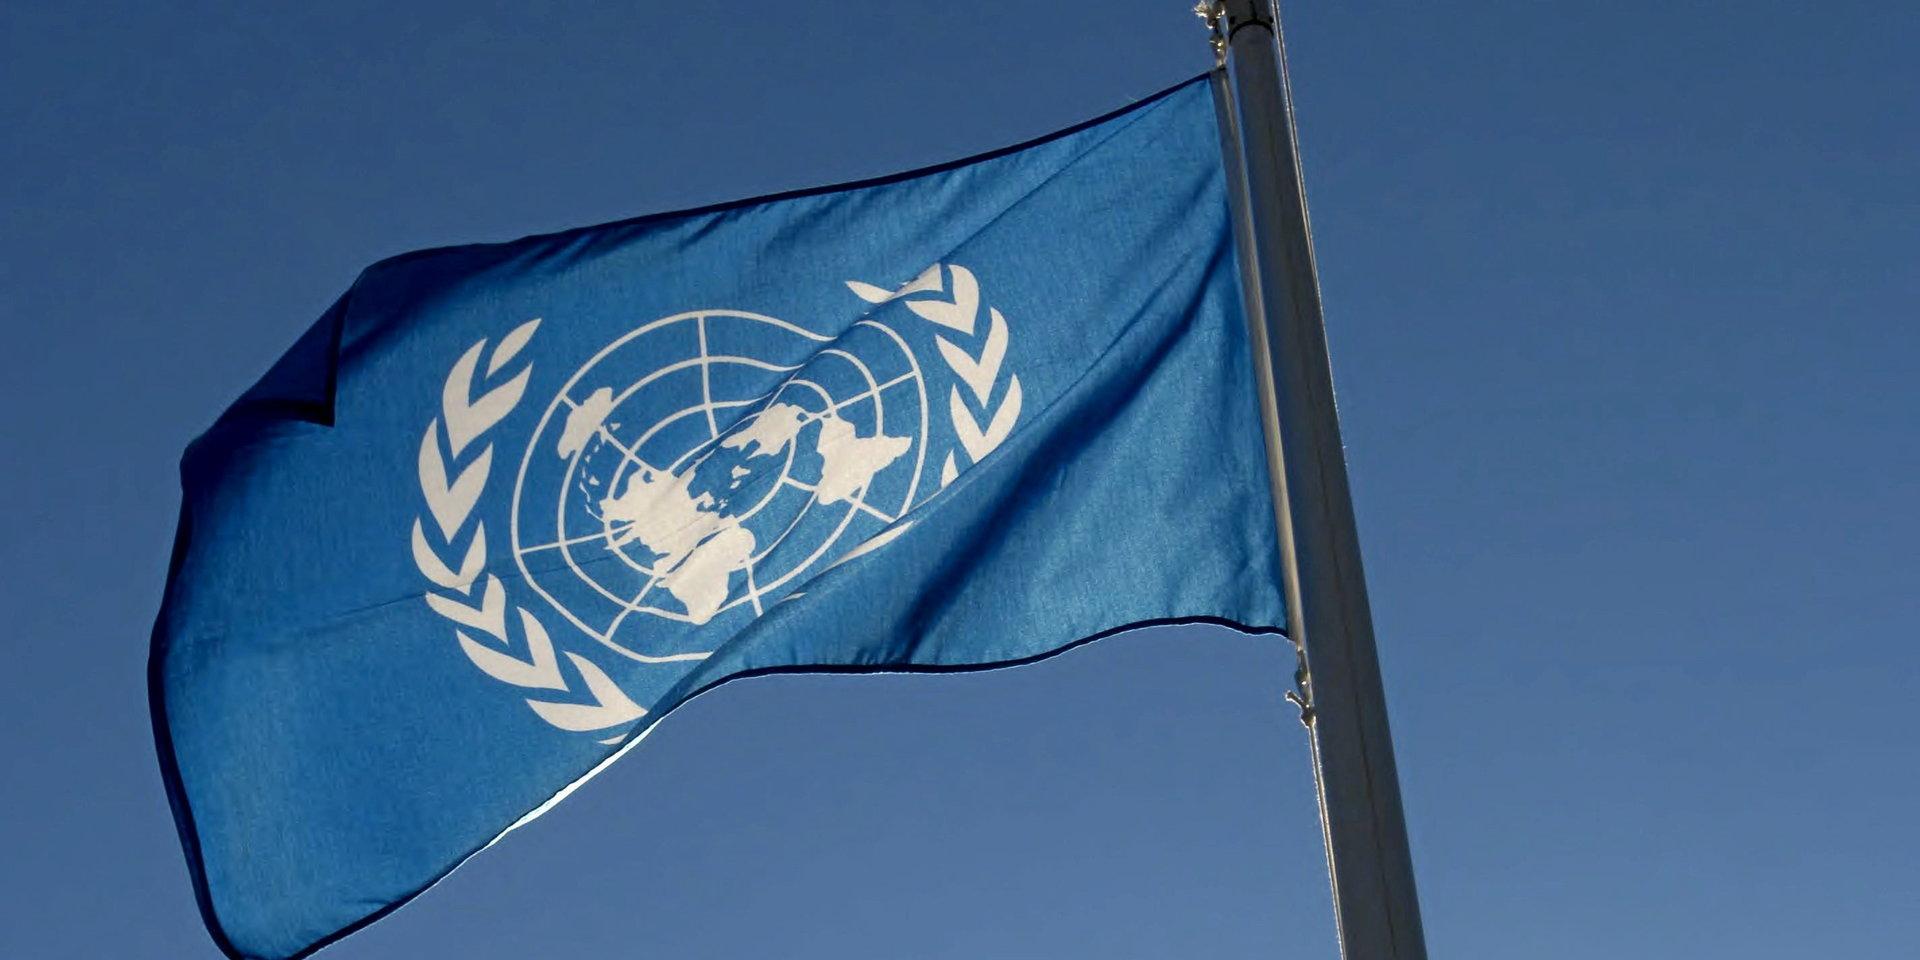 Ett av FN:s globala hållbarhetsmål är att ingen flicka ska utsättas för könsstympning. Trots det riskerar tre miljoner flickor att drabbas per år enligt WHO, skriver en representant för Plan International Sverige.